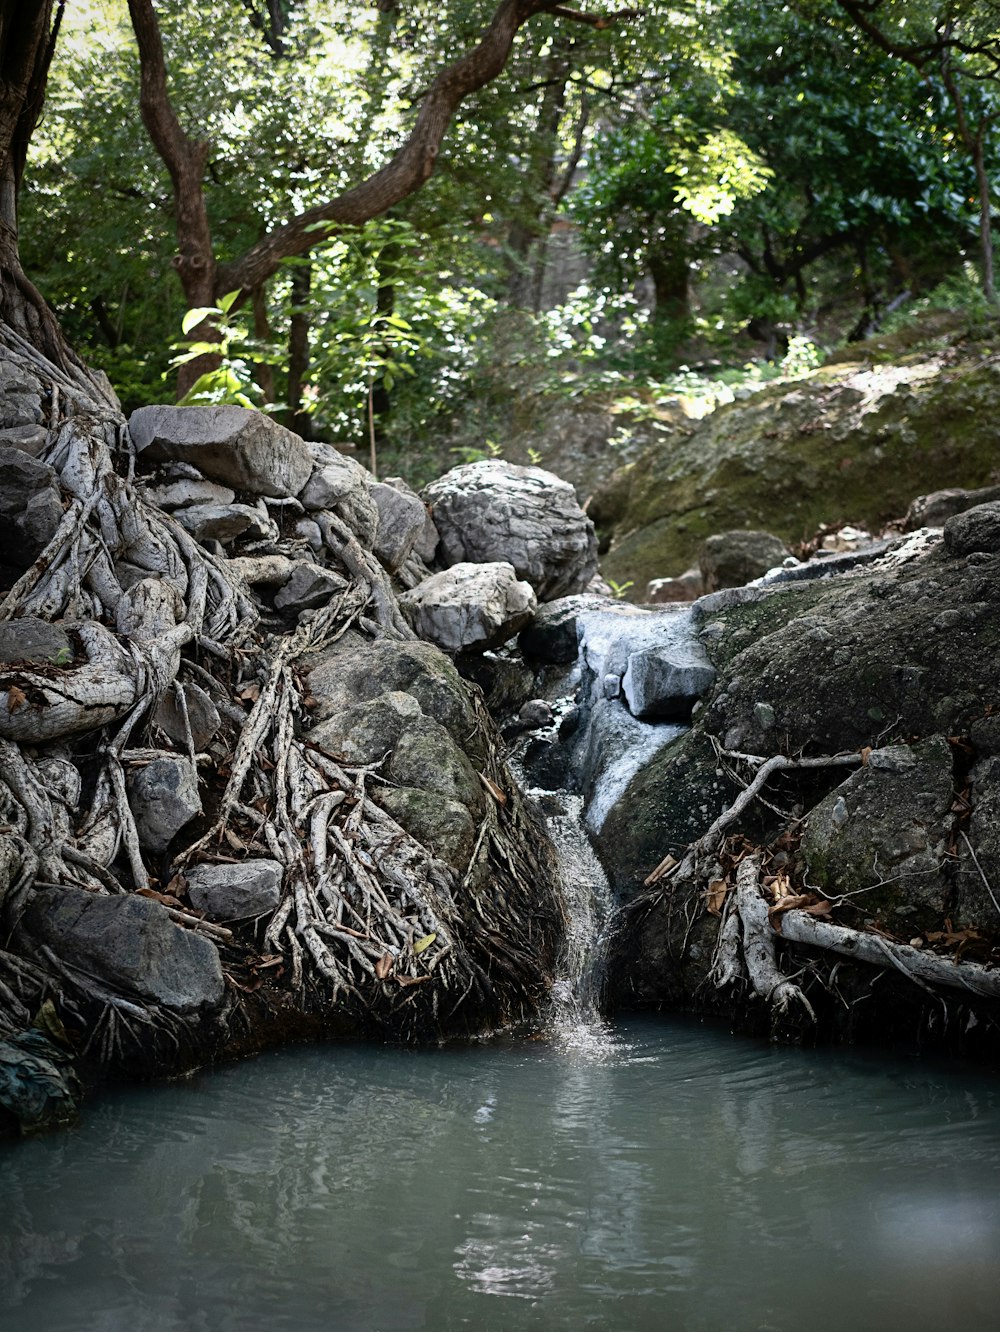 Una corriente de agua que corre a través de un exuberante bosque verde